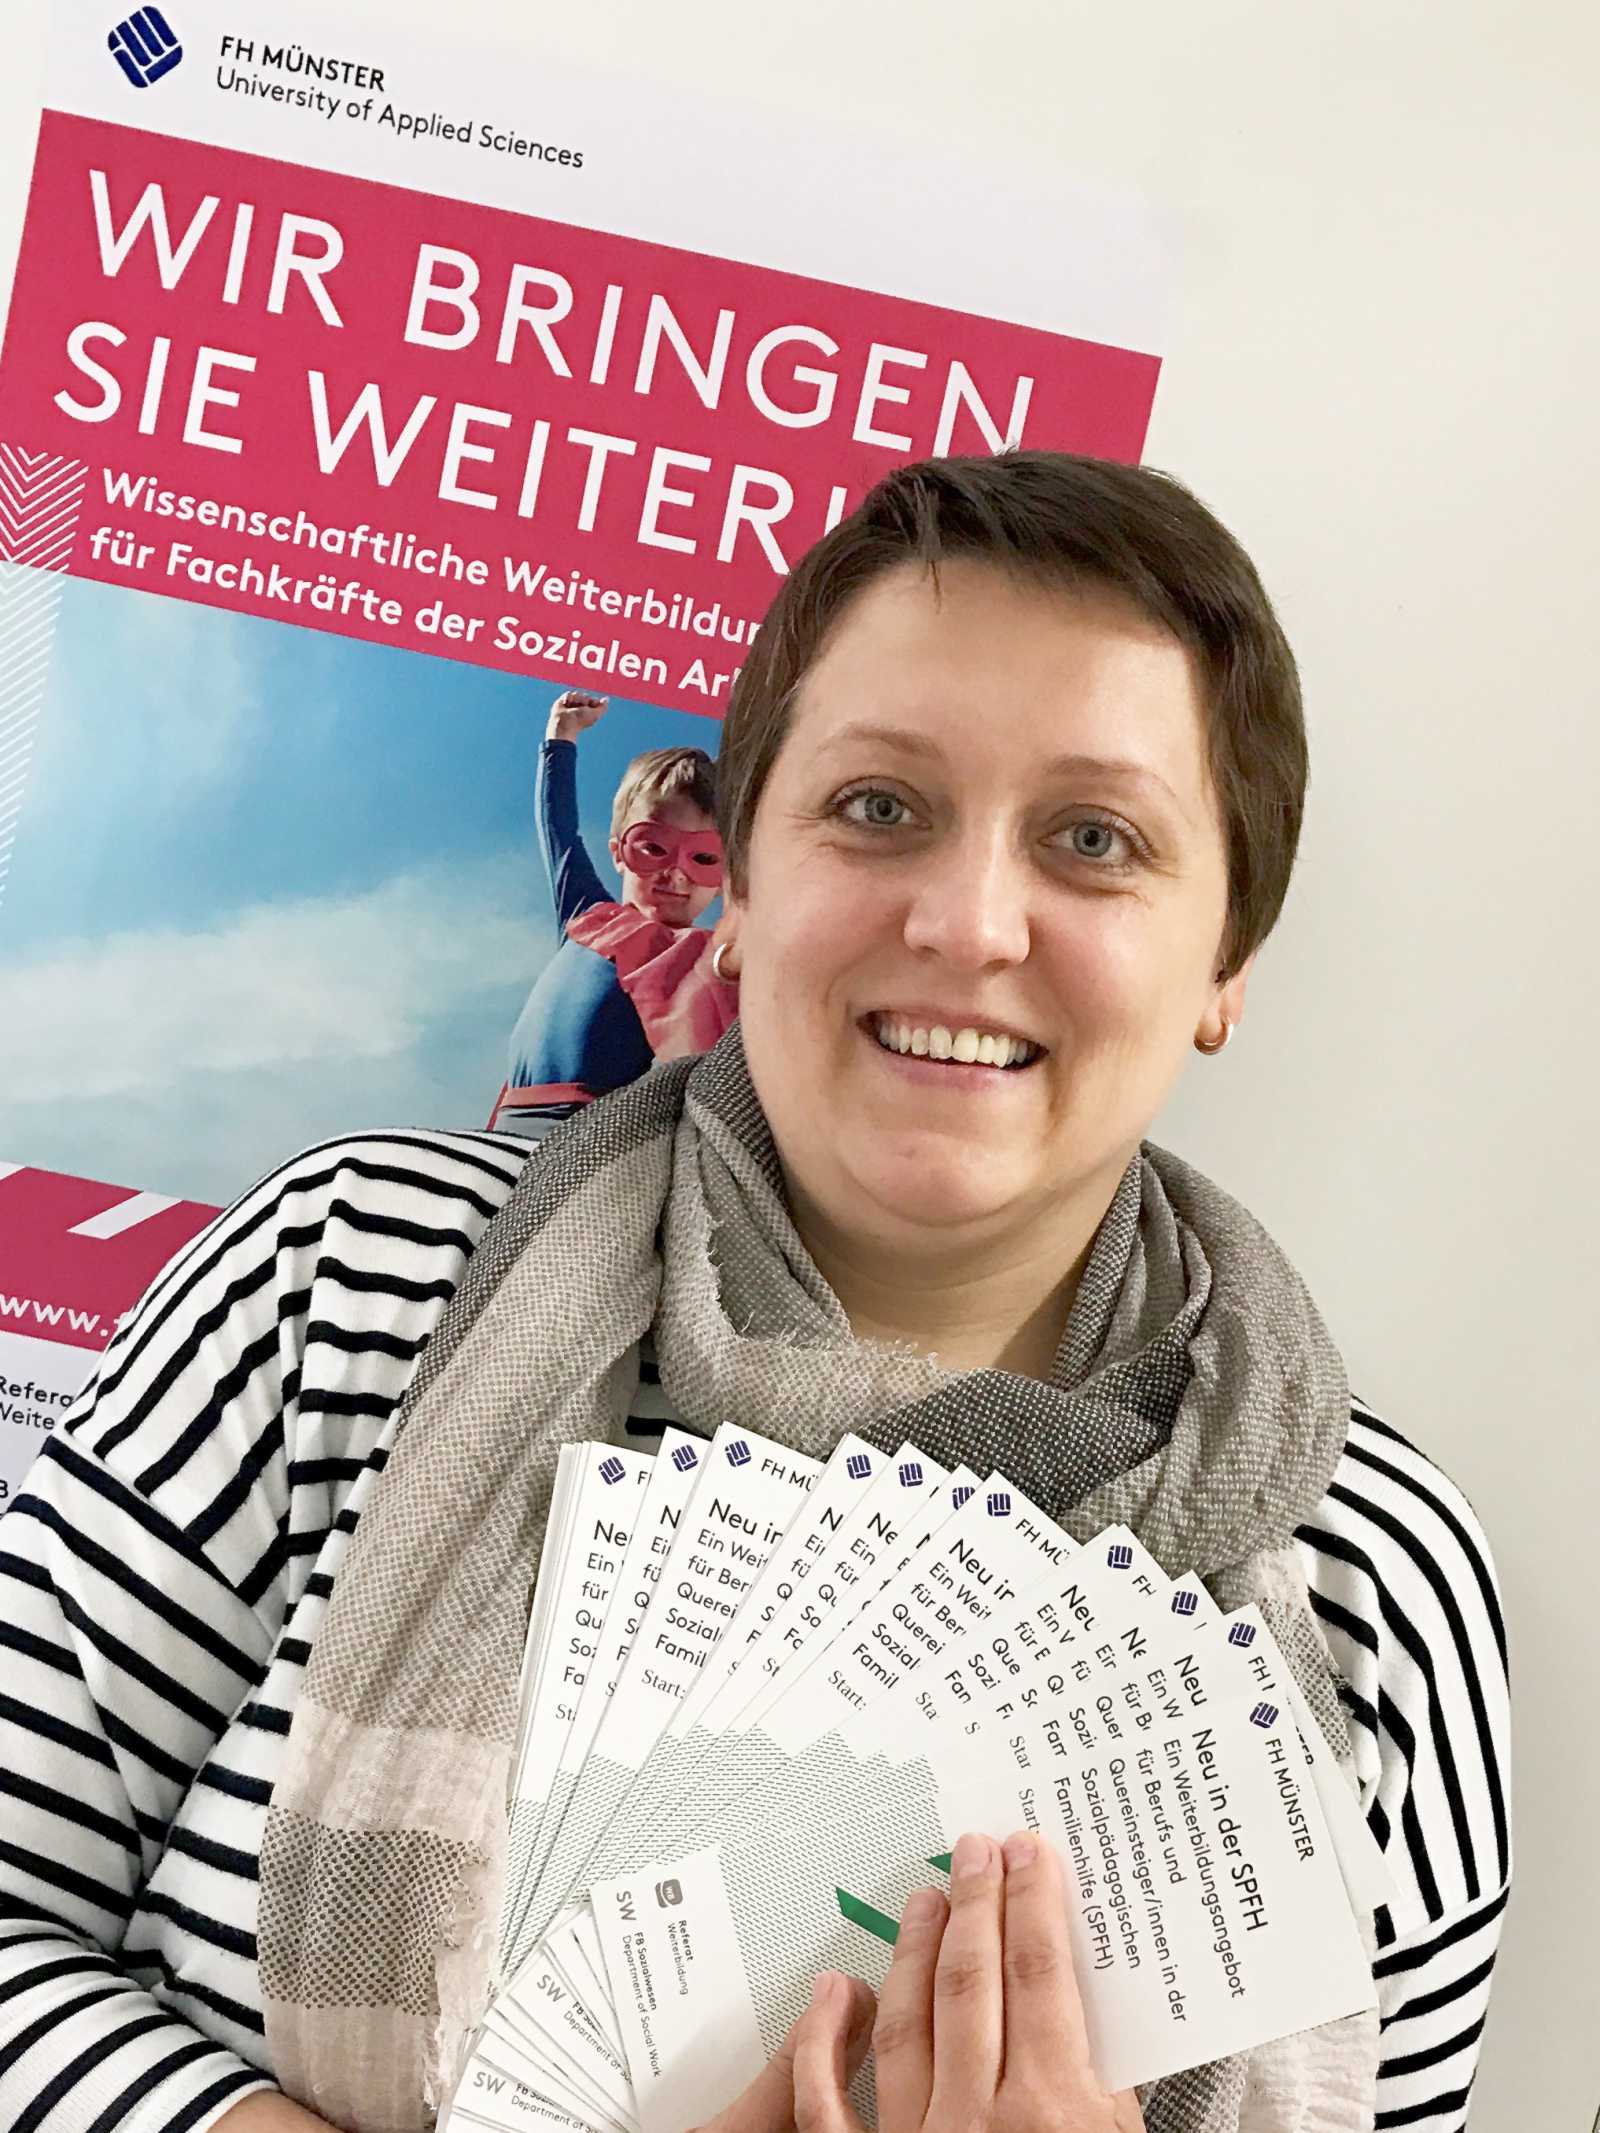 Ansprechpartnerin für die Weiterbildung „Neu in der SPFH“ ist Jelena Schoppmann, Referentin für wissenschaftliche Weiterbildung. (Foto: FH Münster/Referat Weiterbildung am Fachbereich Sozialwesen)